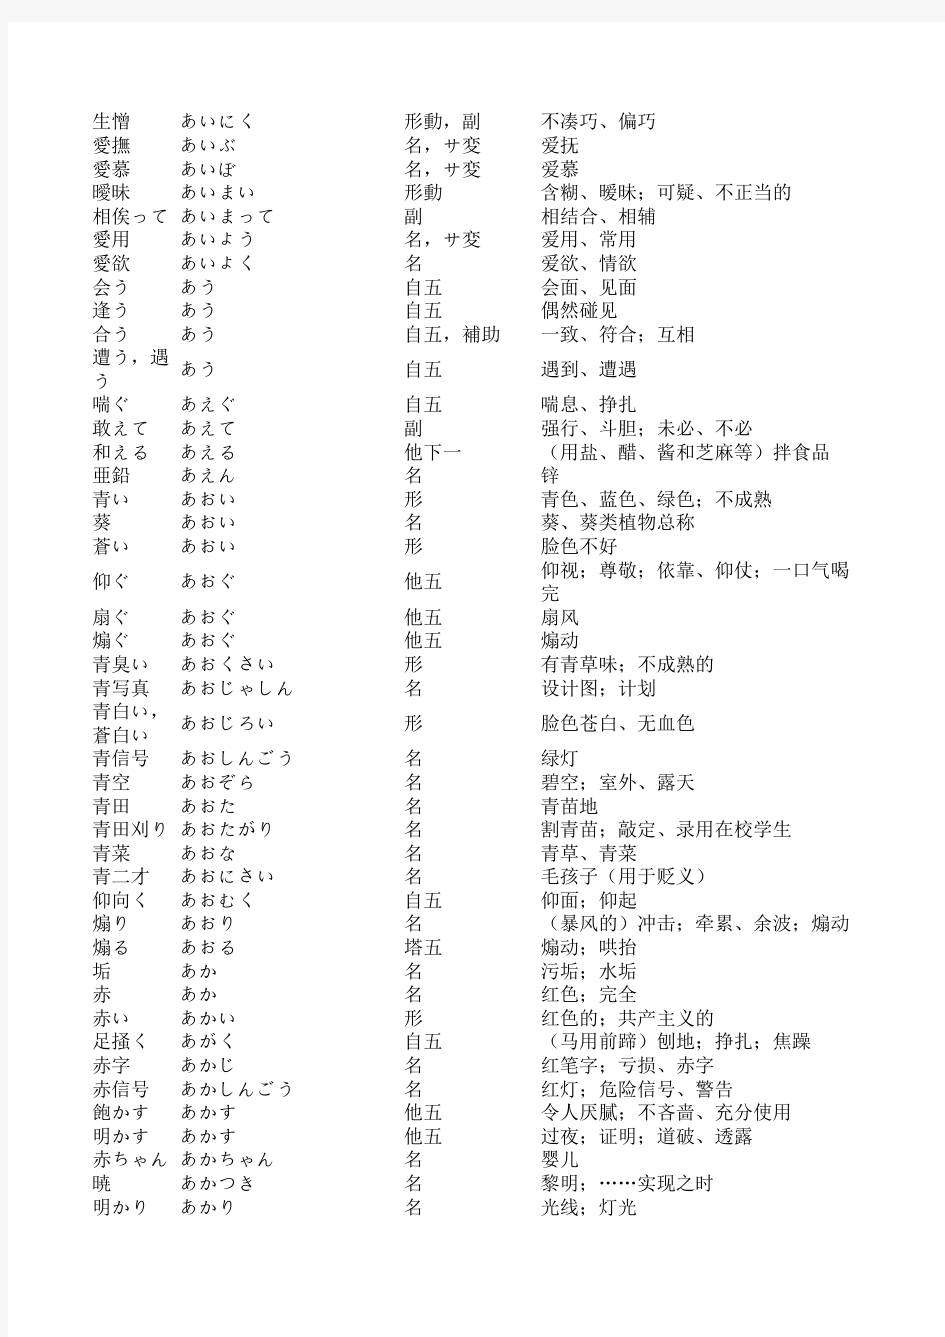 日语1-4级词汇表 (1)